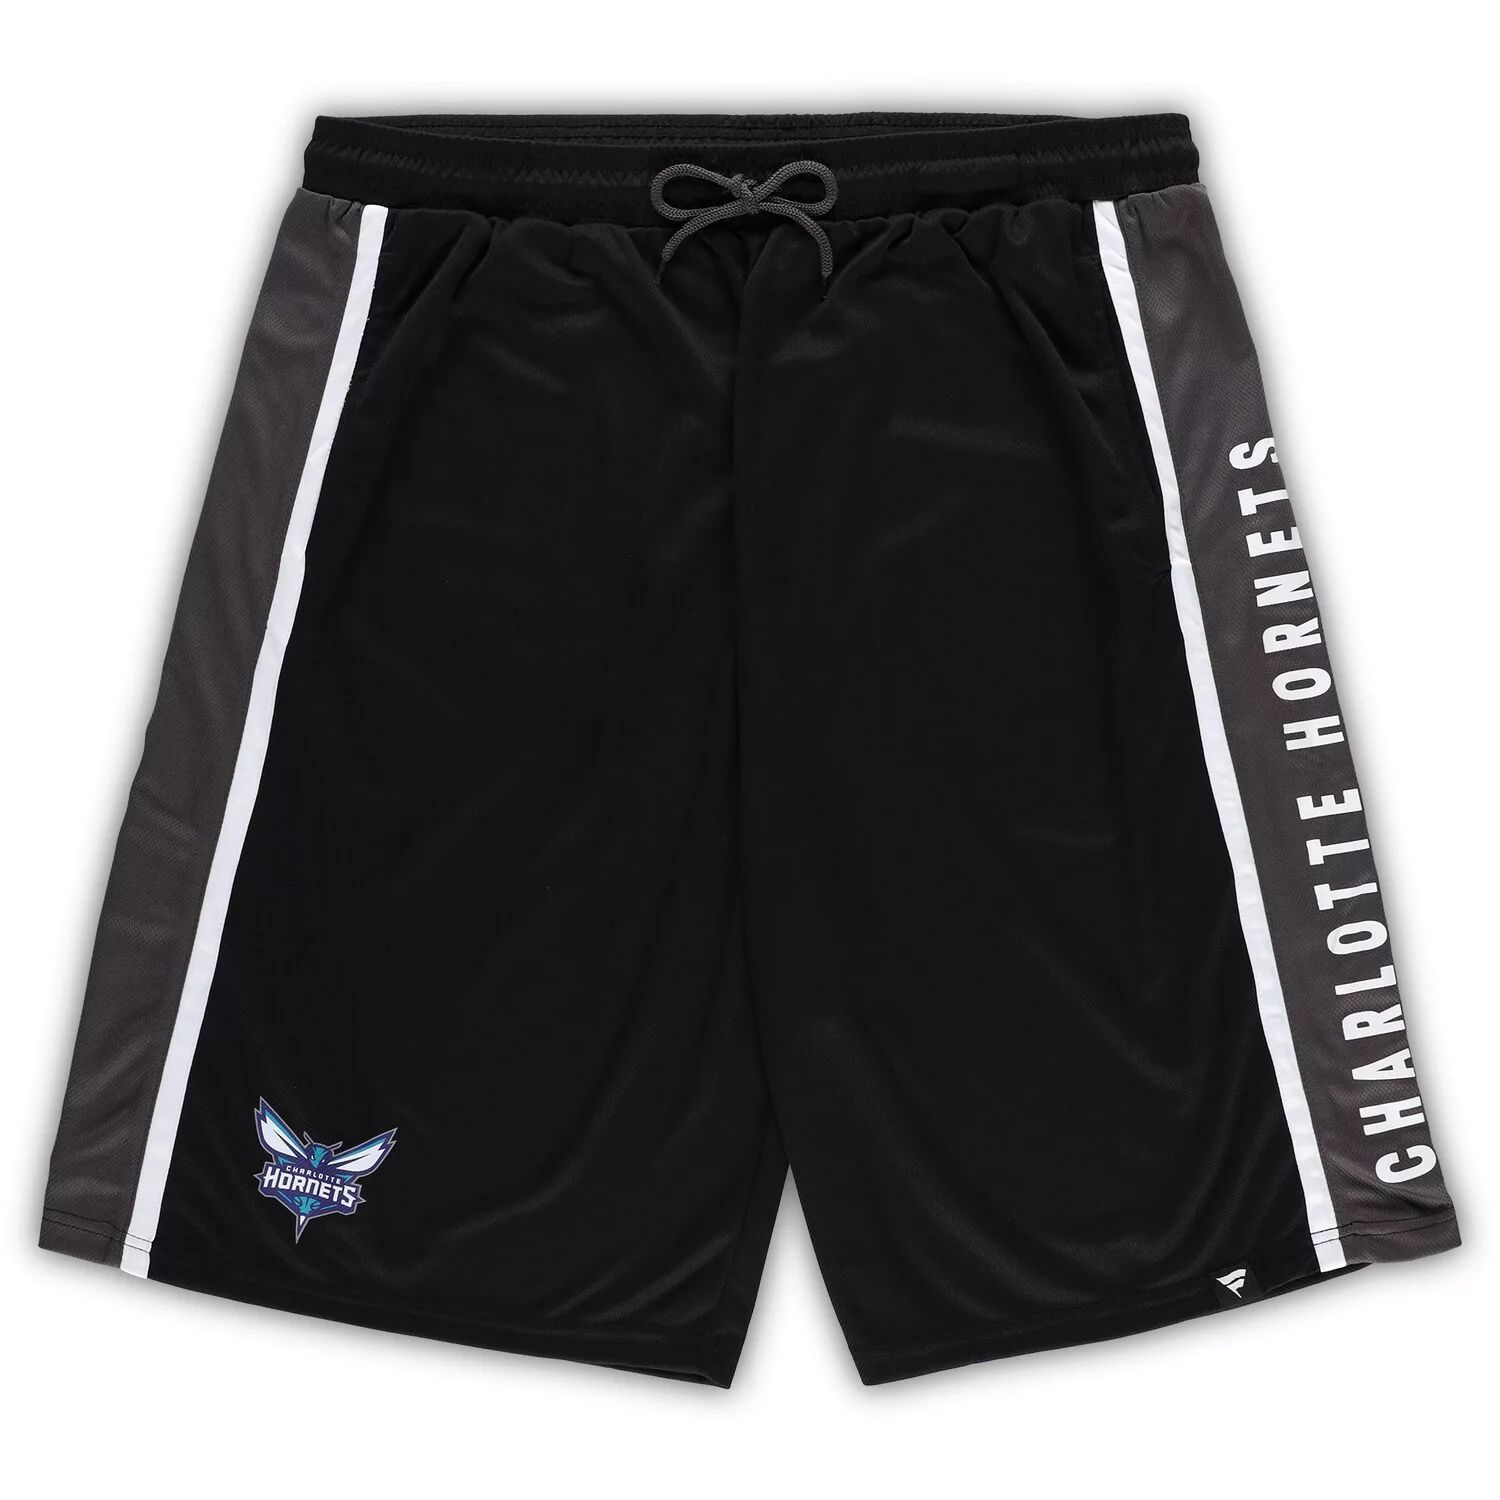 Мужские фирменные черные шорты Charlotte Hornets Big & Tall Referee Iconic в сетку Fanatics фото